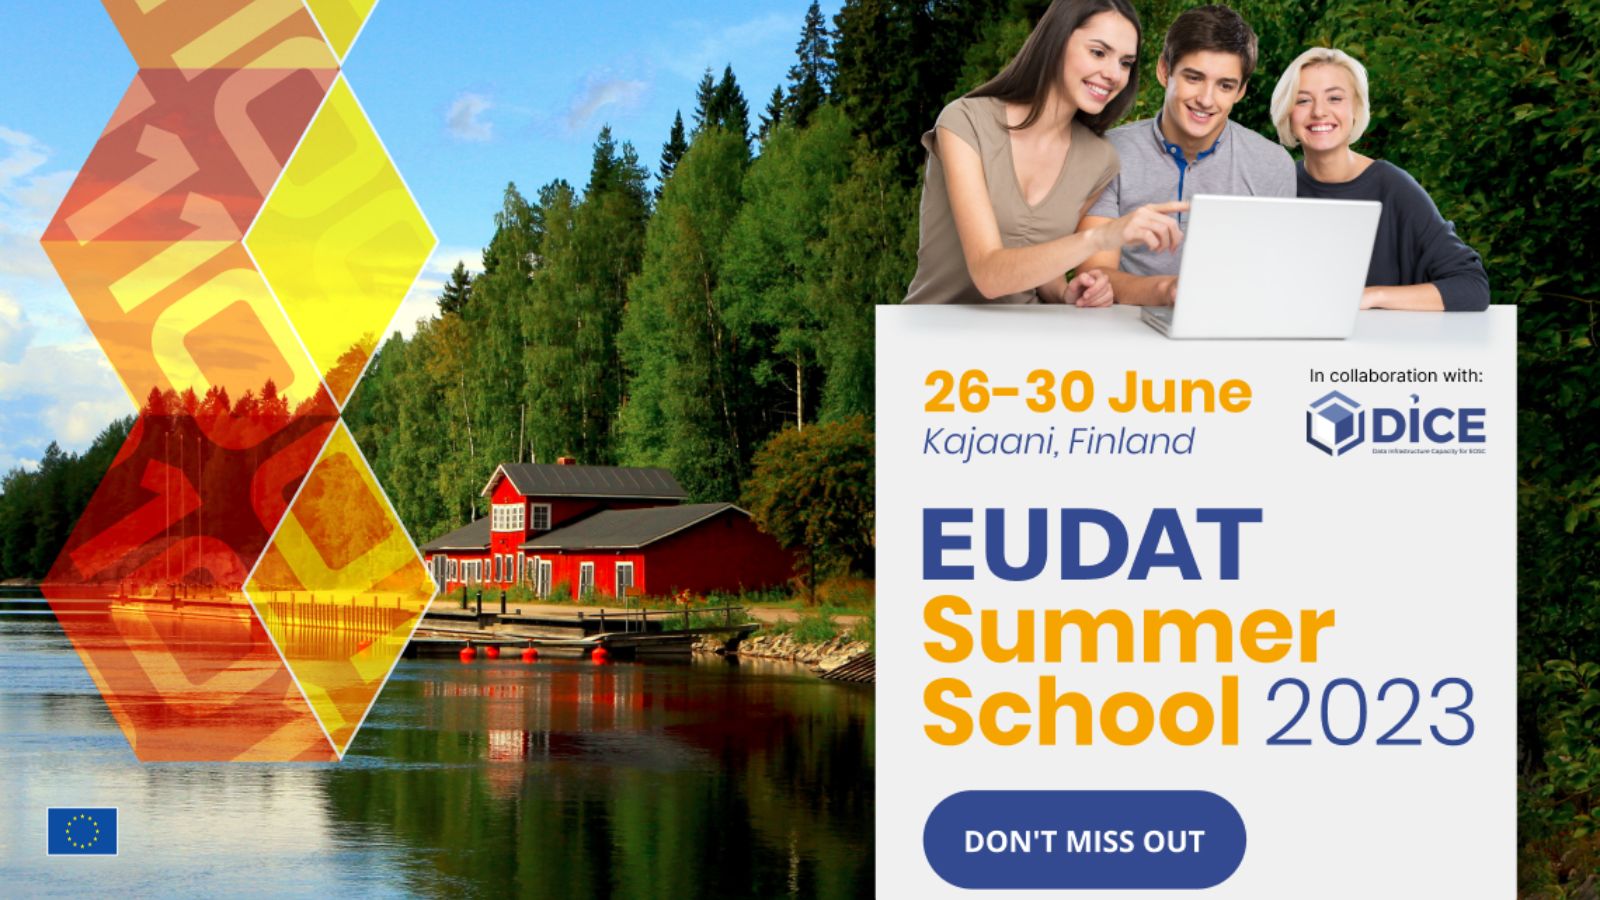 EUDAT Summer School 2023